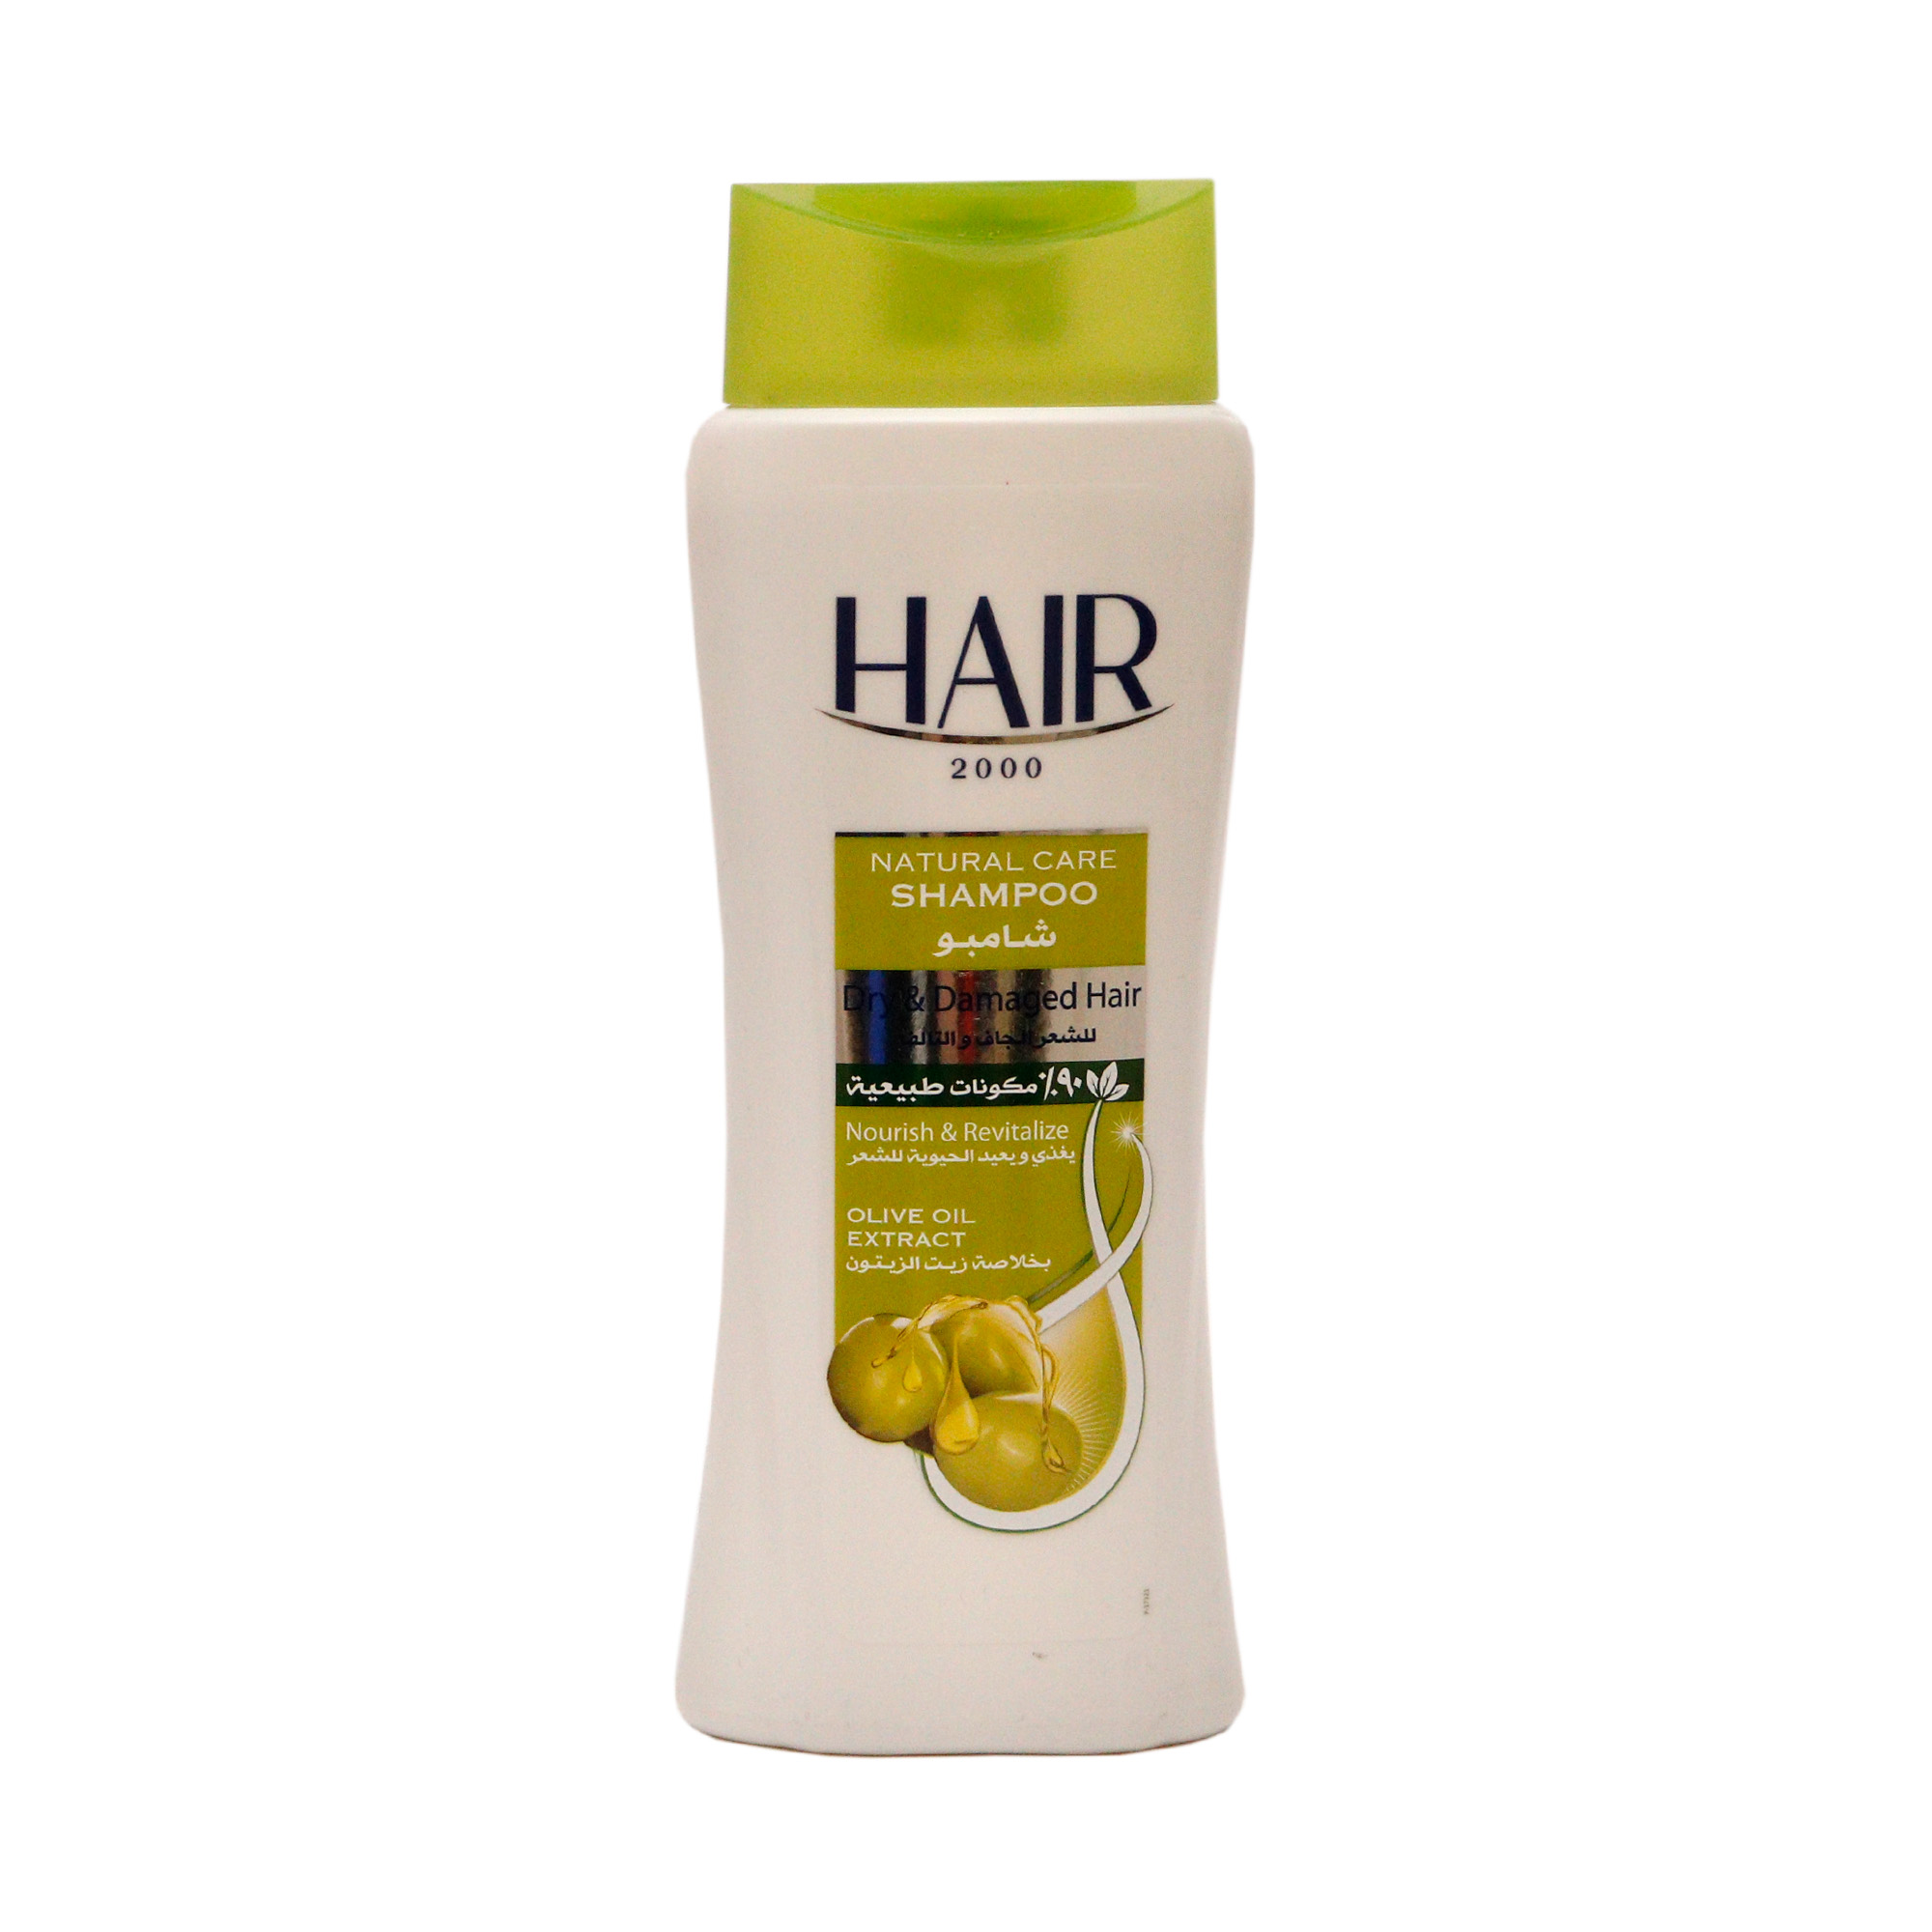 Շամպուն Hair 2000  Olive7843